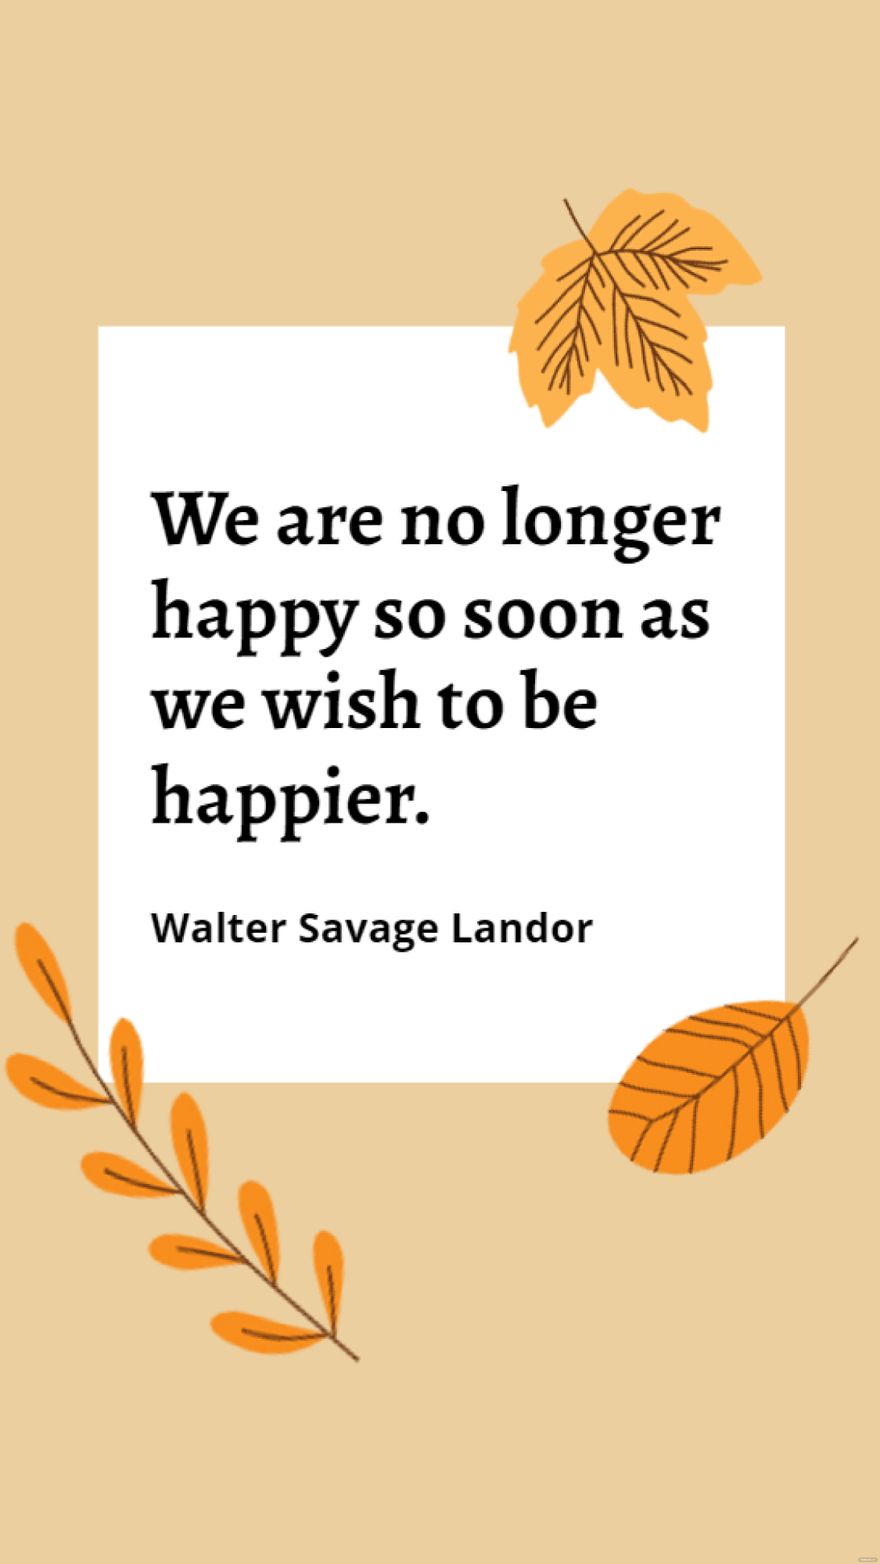 Free Walter Savage Landor - We are no longer happy so soon as we wish to be happier.